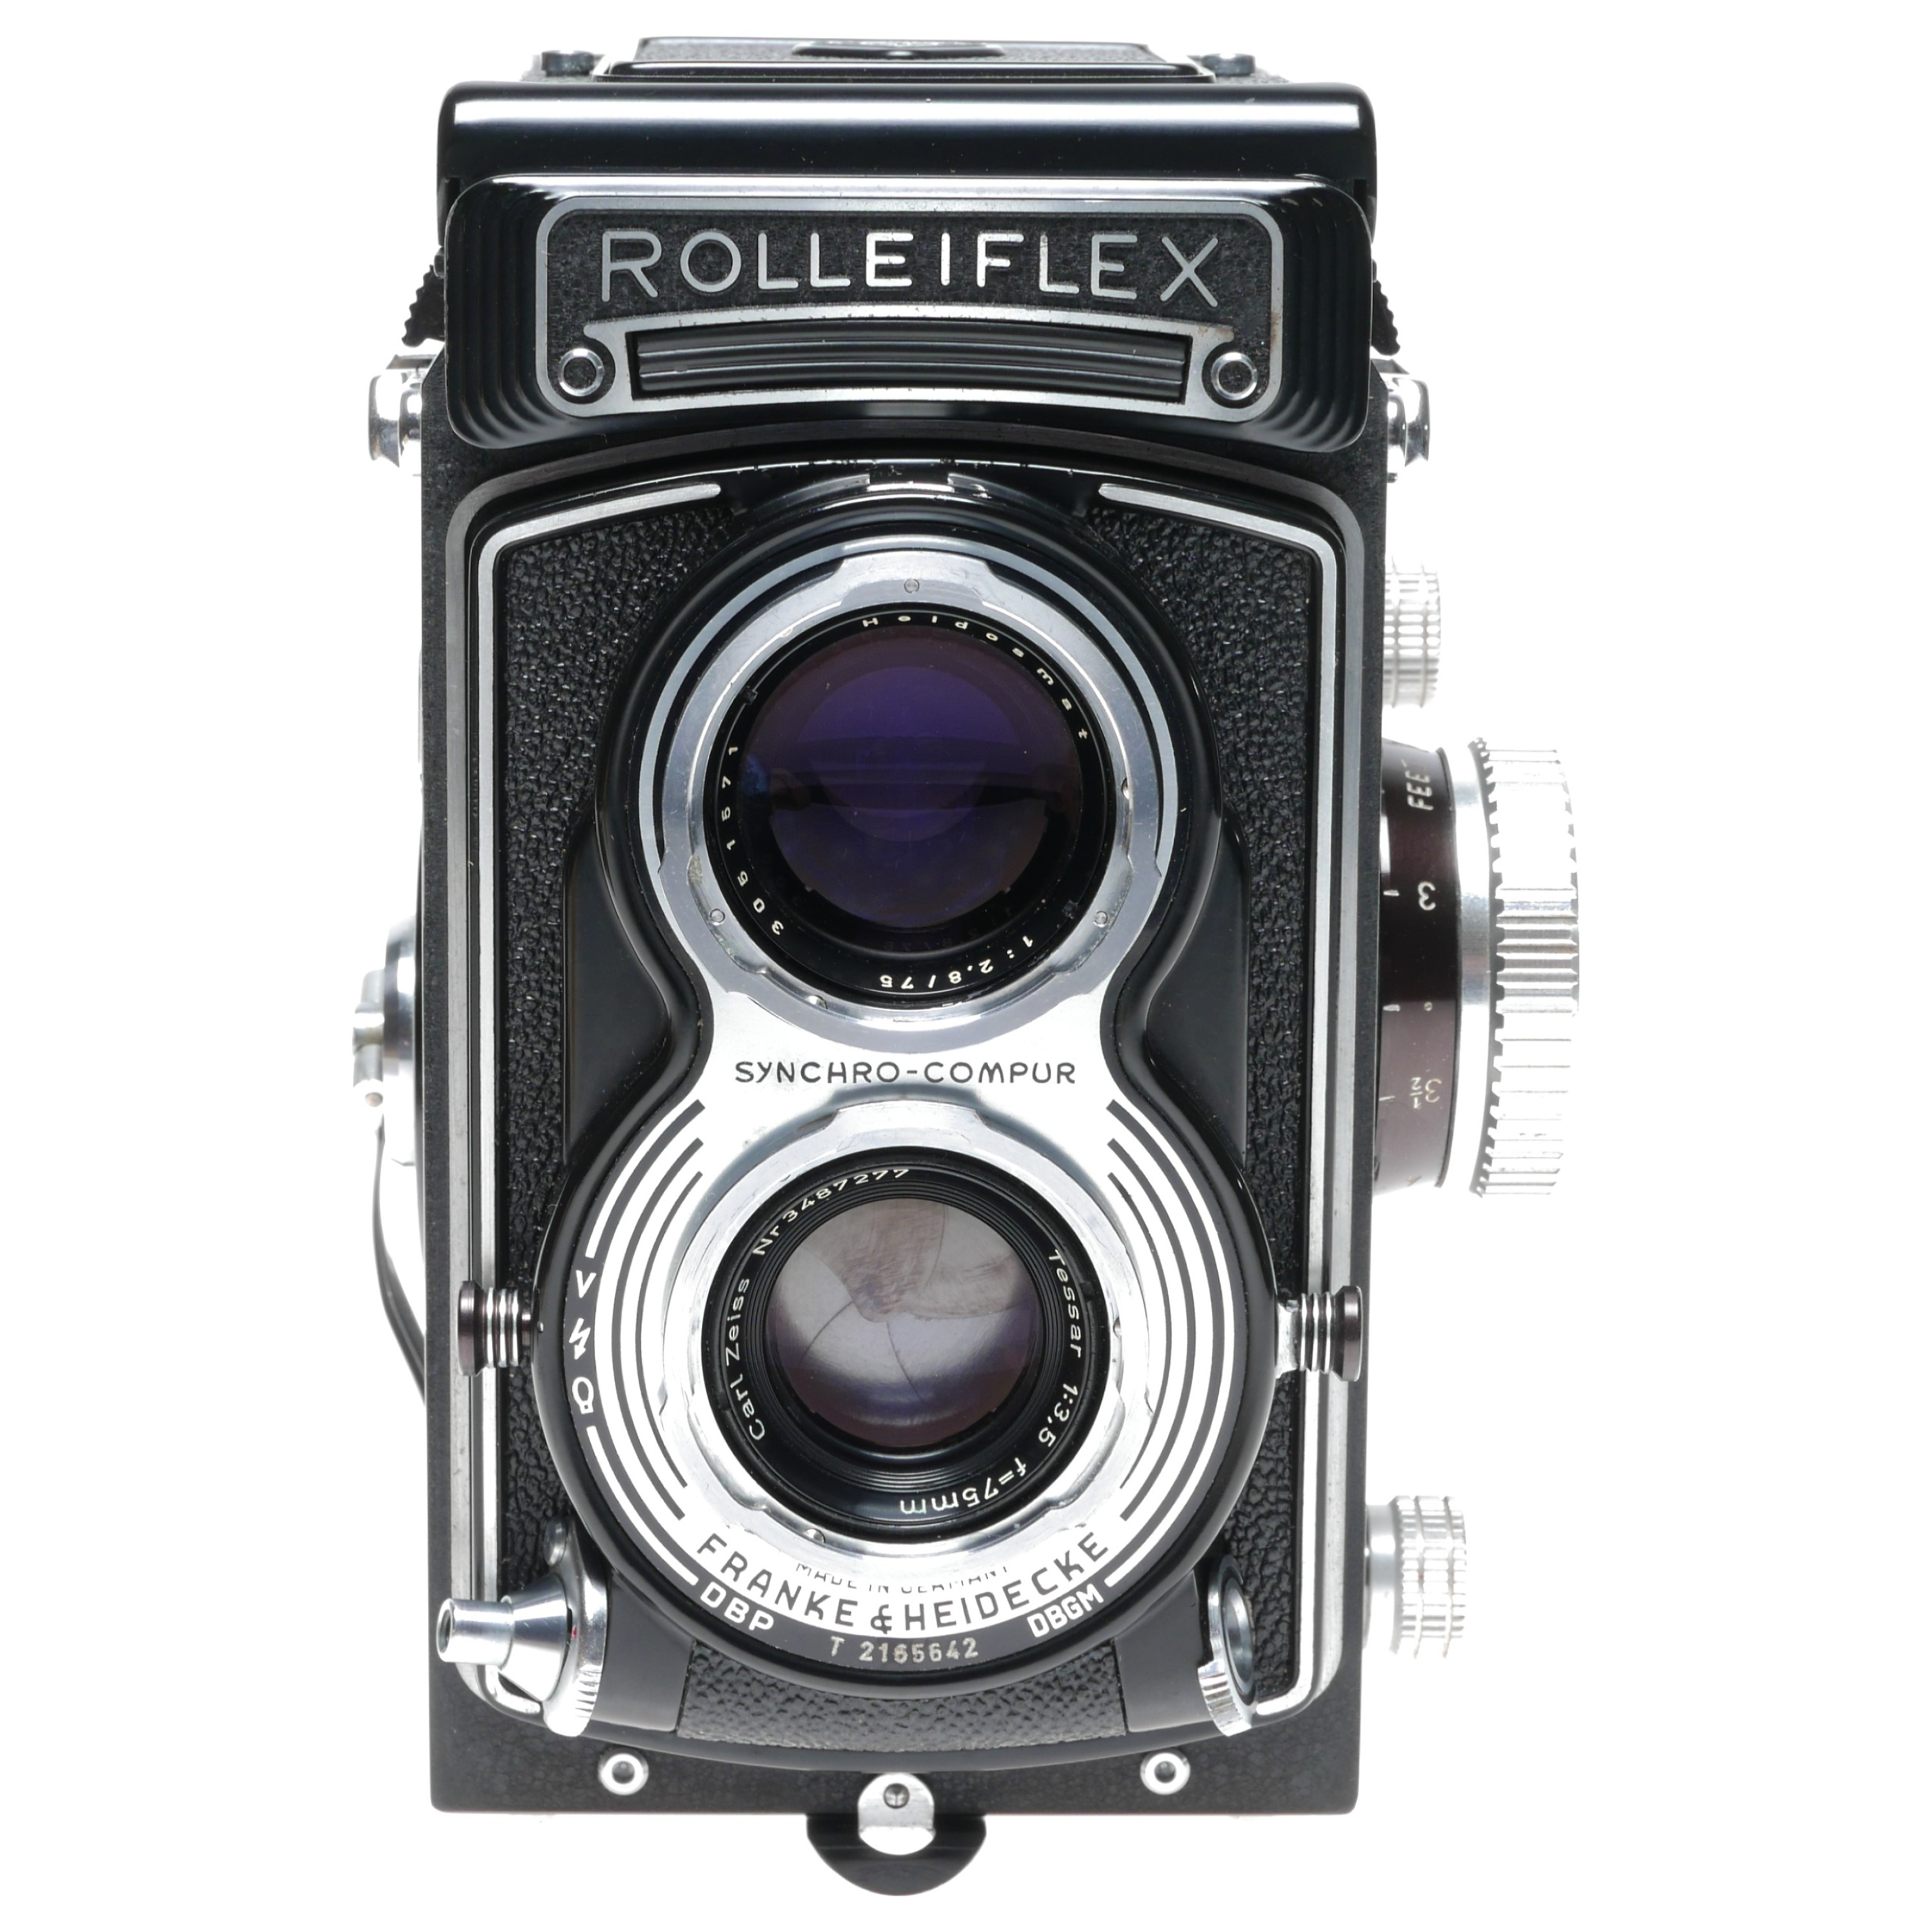 Rolleiflex T Model-3 Roll Film Camera Carl Zeiss Tessar 1:3.5 fu003d75 Lens